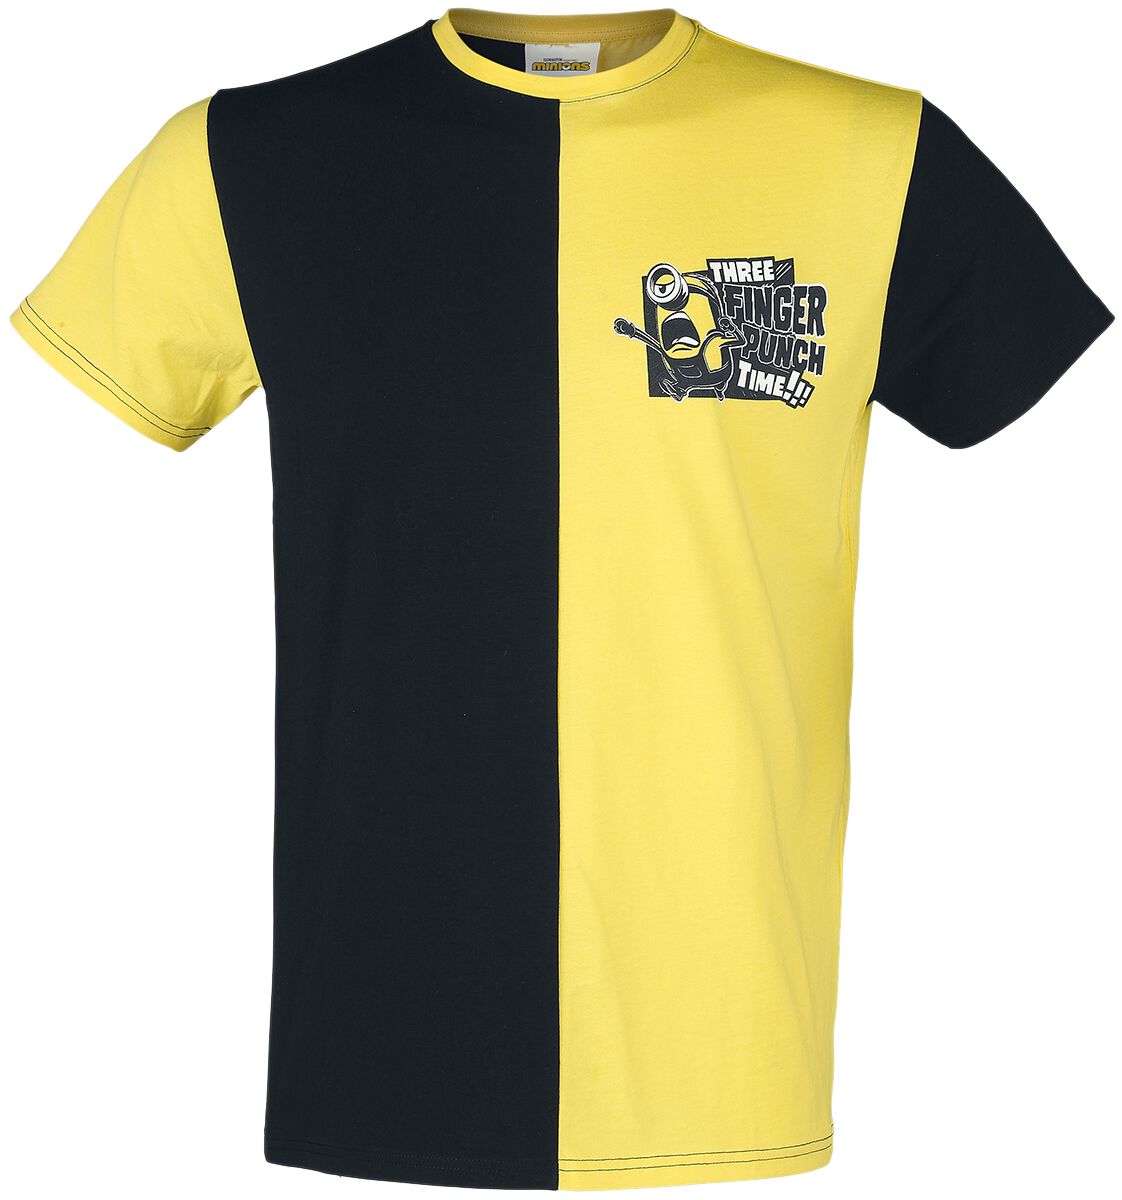 Minions Three Finger Punch Time!!! T-Shirt schwarz gelb in M von Minions